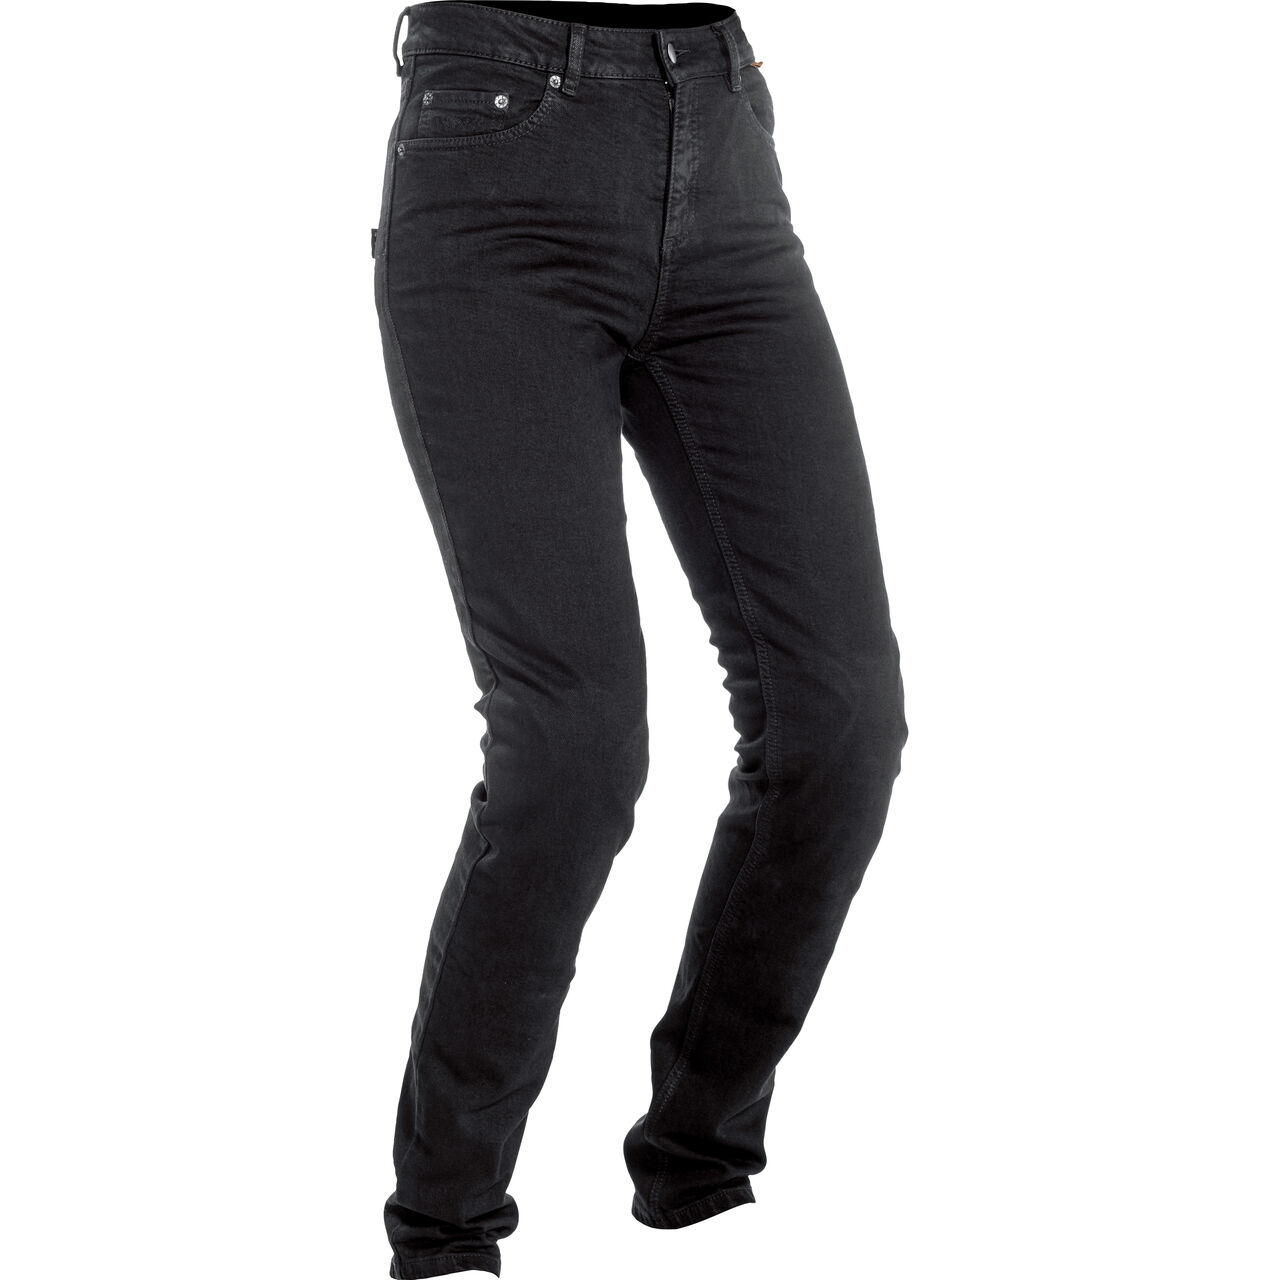 Damen Jeans Slim Fit schwarz 32 kaufen – POLO Motorrad Österreich